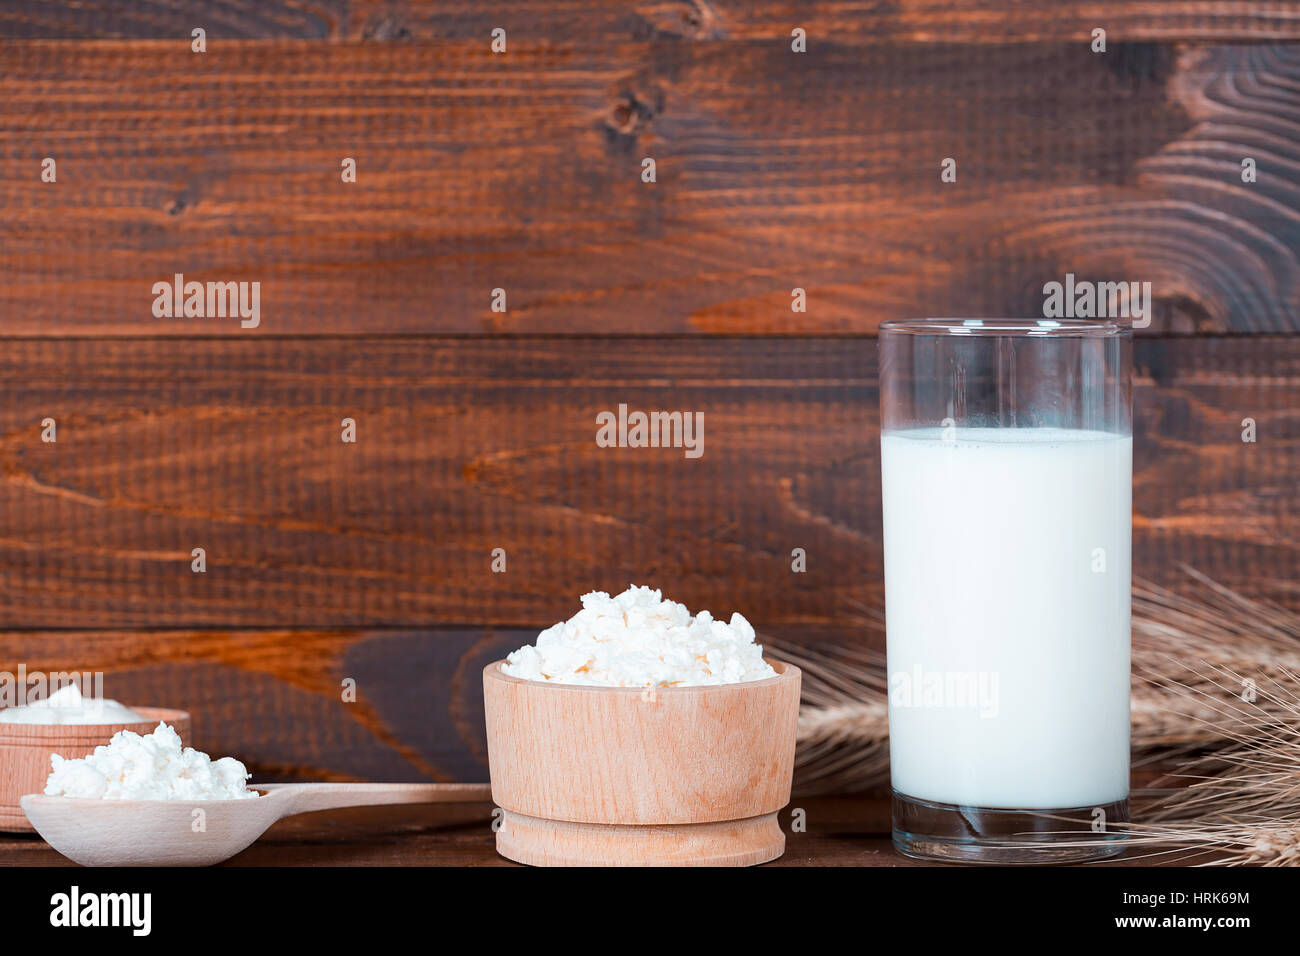 Hausgemachte Naturprodukte: Milch, Käse, saurer Sahne und Eiern auf alten hölzernen Hintergrund mit Ähren. Mit Platz für Ihren text Stockfoto